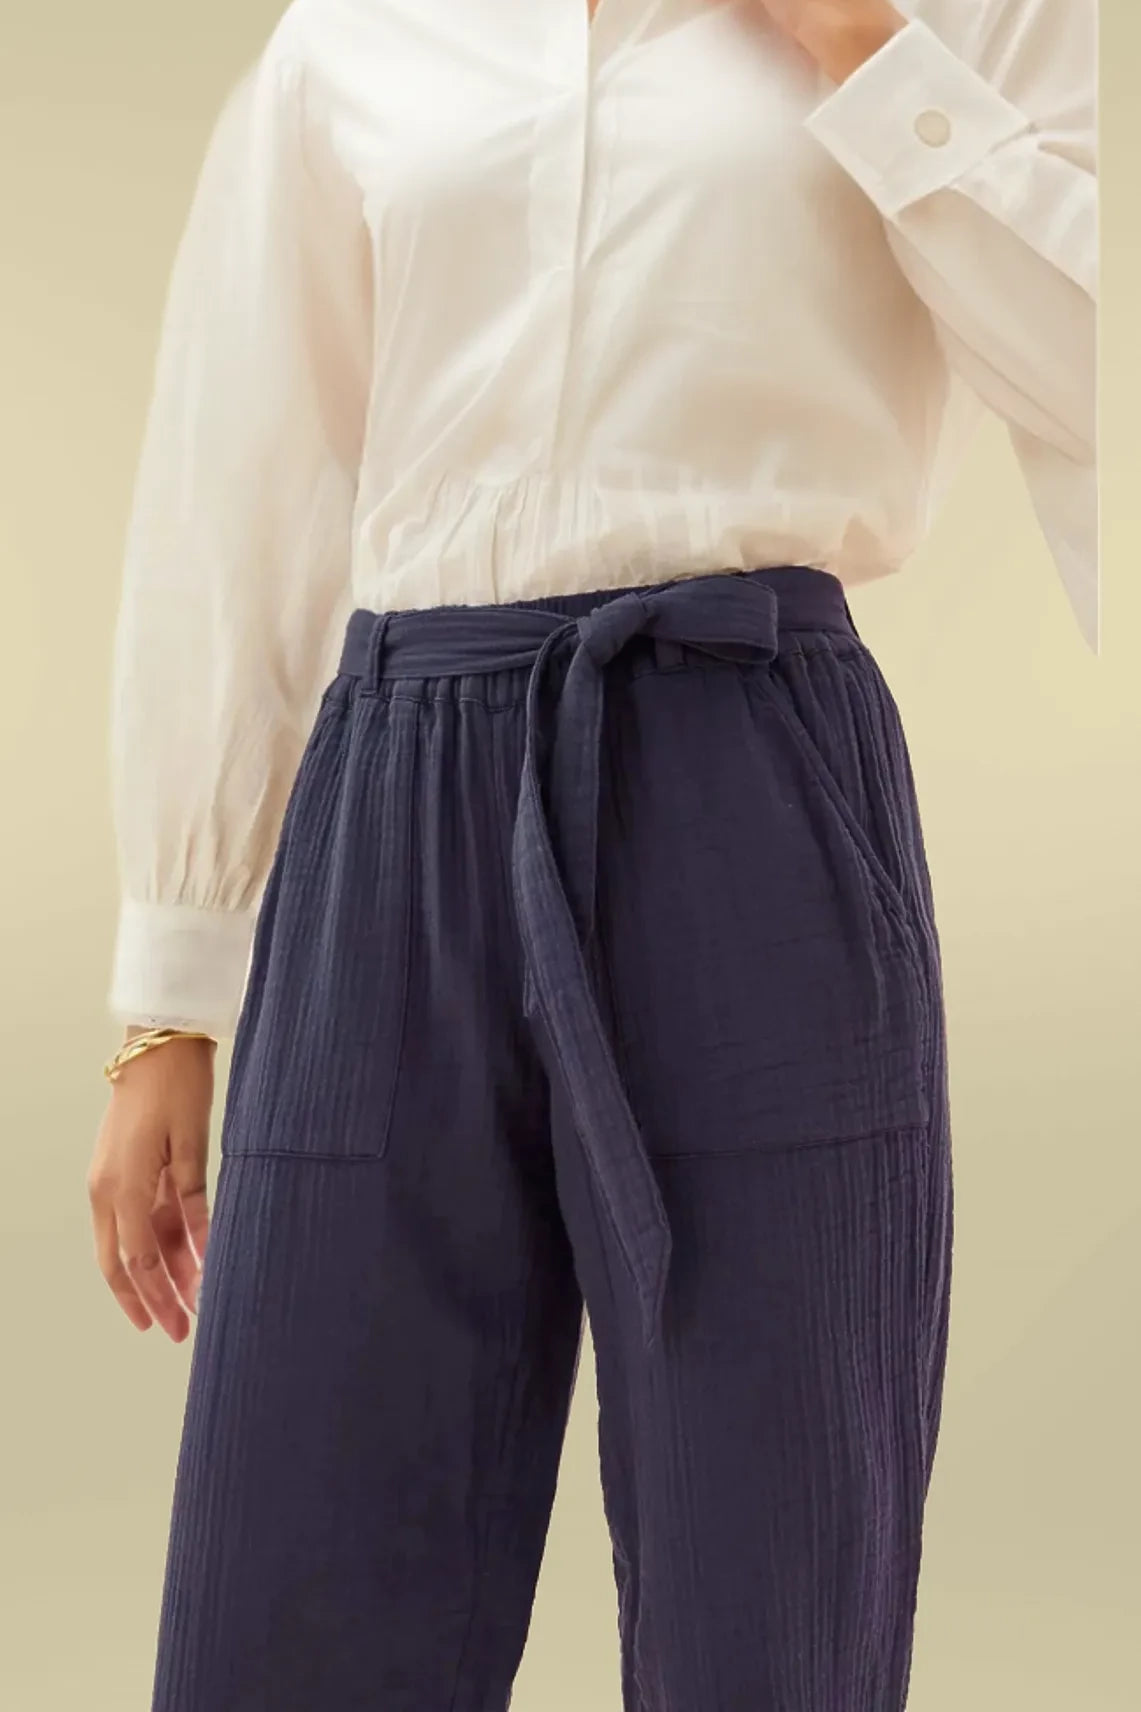 M&S Per Una Cotton Taper Ankle Grazer Trousers